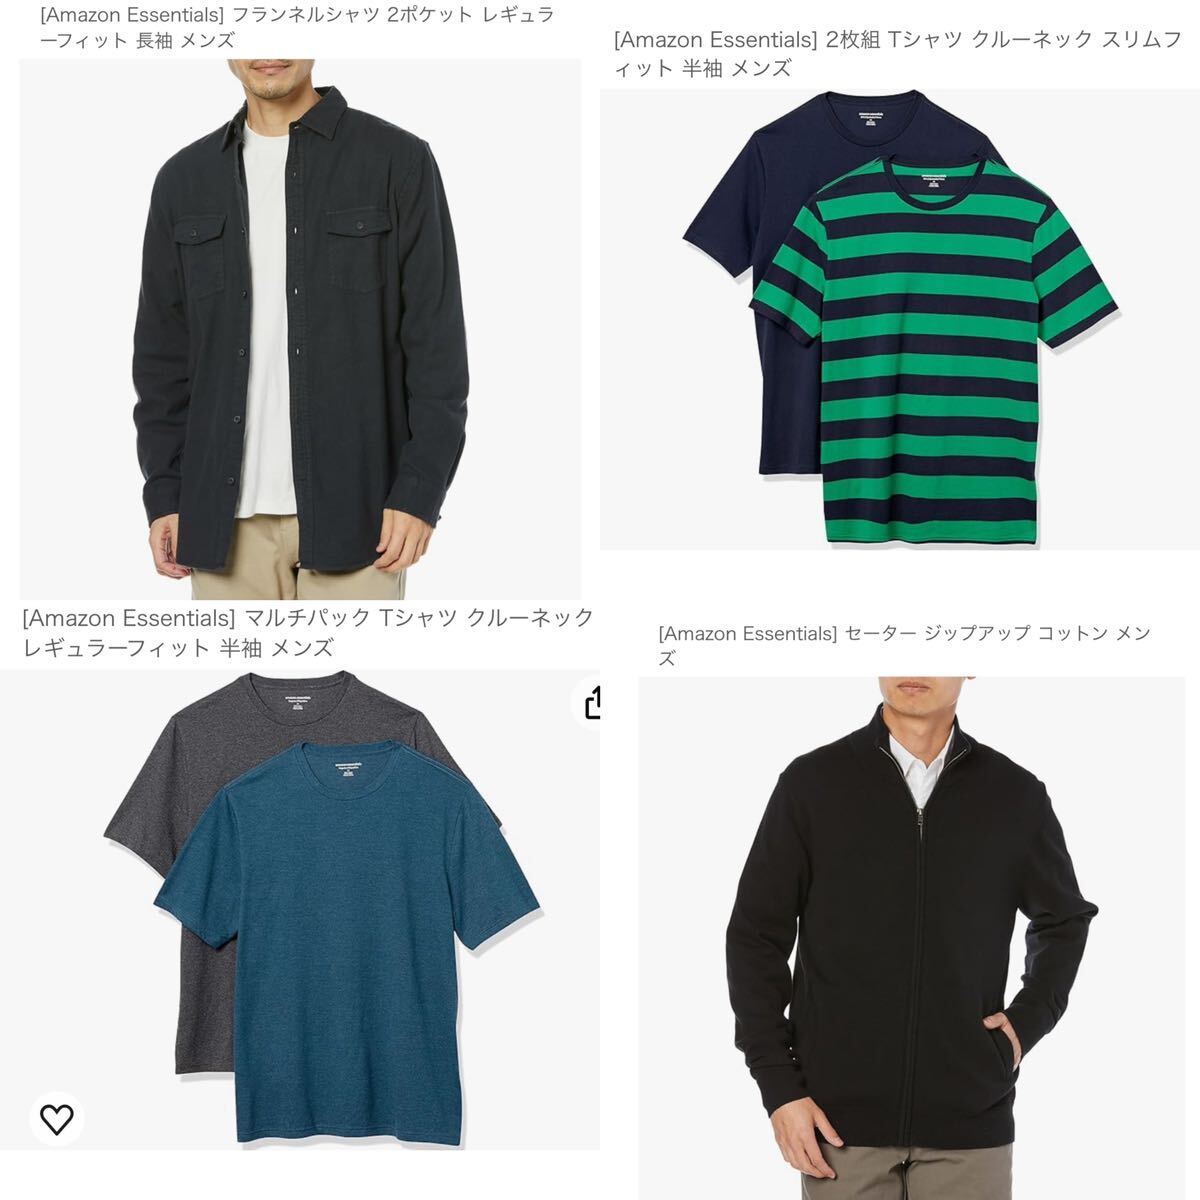 【新品】洋服 まとめ売り Amazon essentials レディース セーター Tシャツ メンズ シャツ ボトムス 53枚 セット 162の画像5